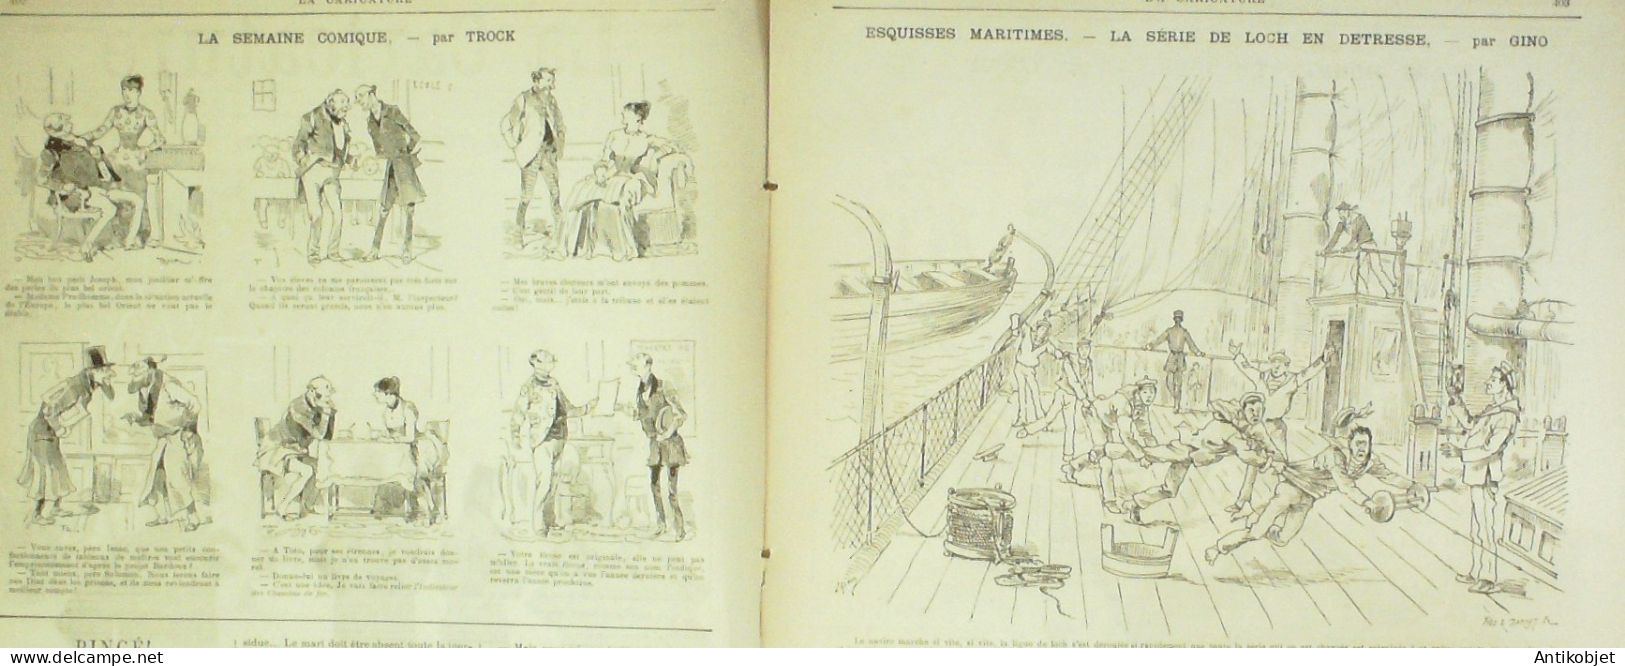 La Caricature 1885 N°312 Sur Le Terrain Sorel Gino Boussenard Par Luque Duel Job Loys - Magazines - Before 1900